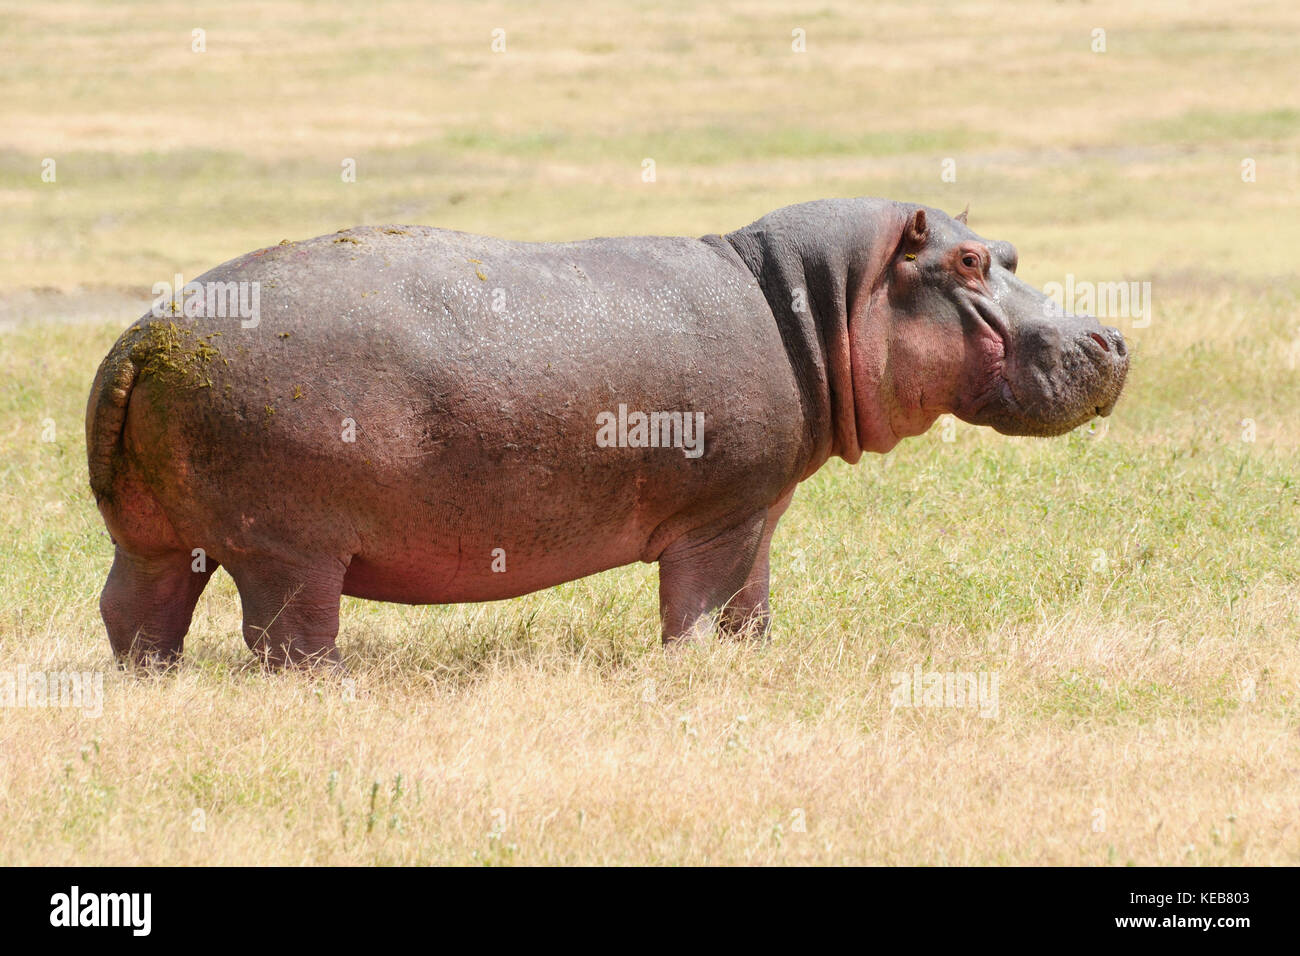 Wildlife Hippo in safari in Africa Stock Photo